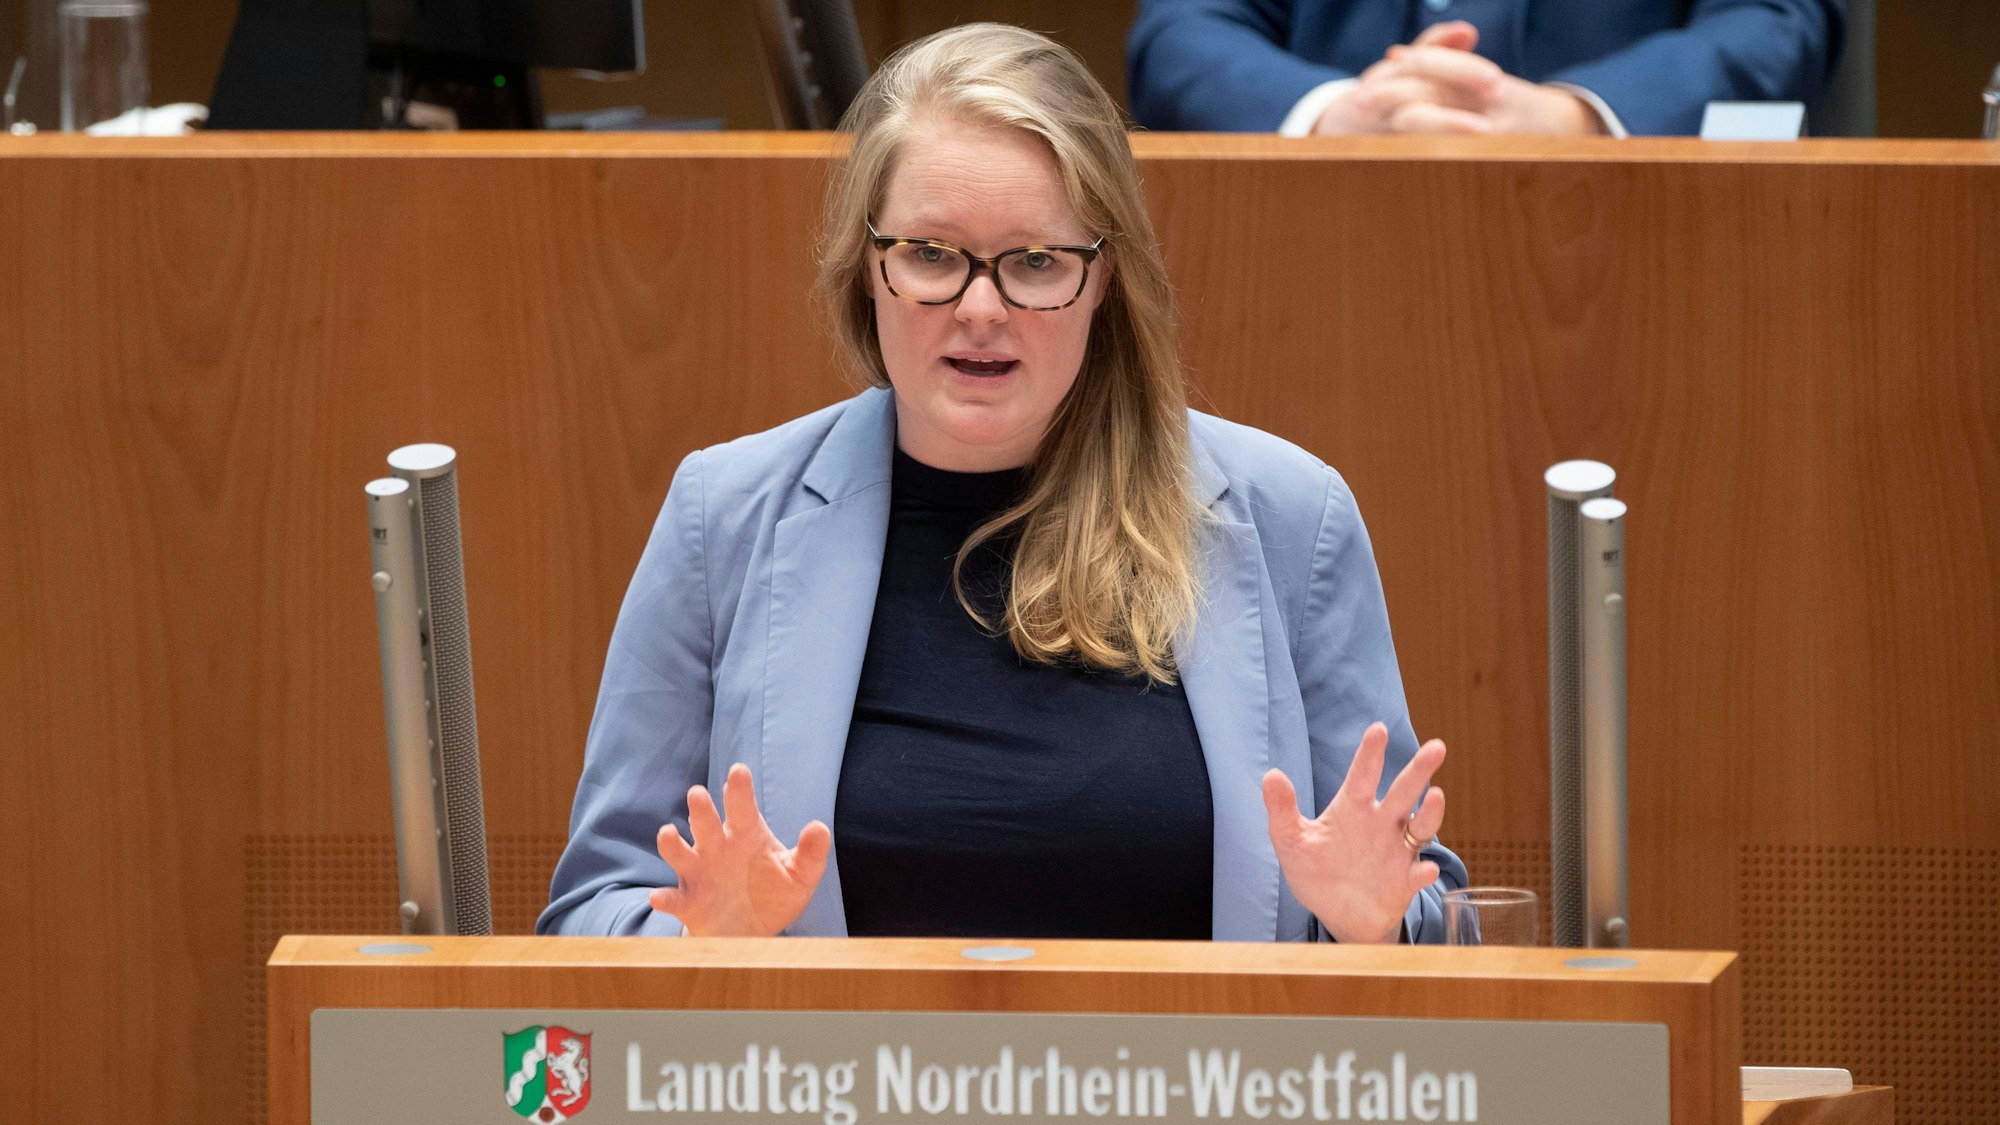 Lisa-Kristin Kapteinat bei einer Rede im Landtag in Düsseldorf